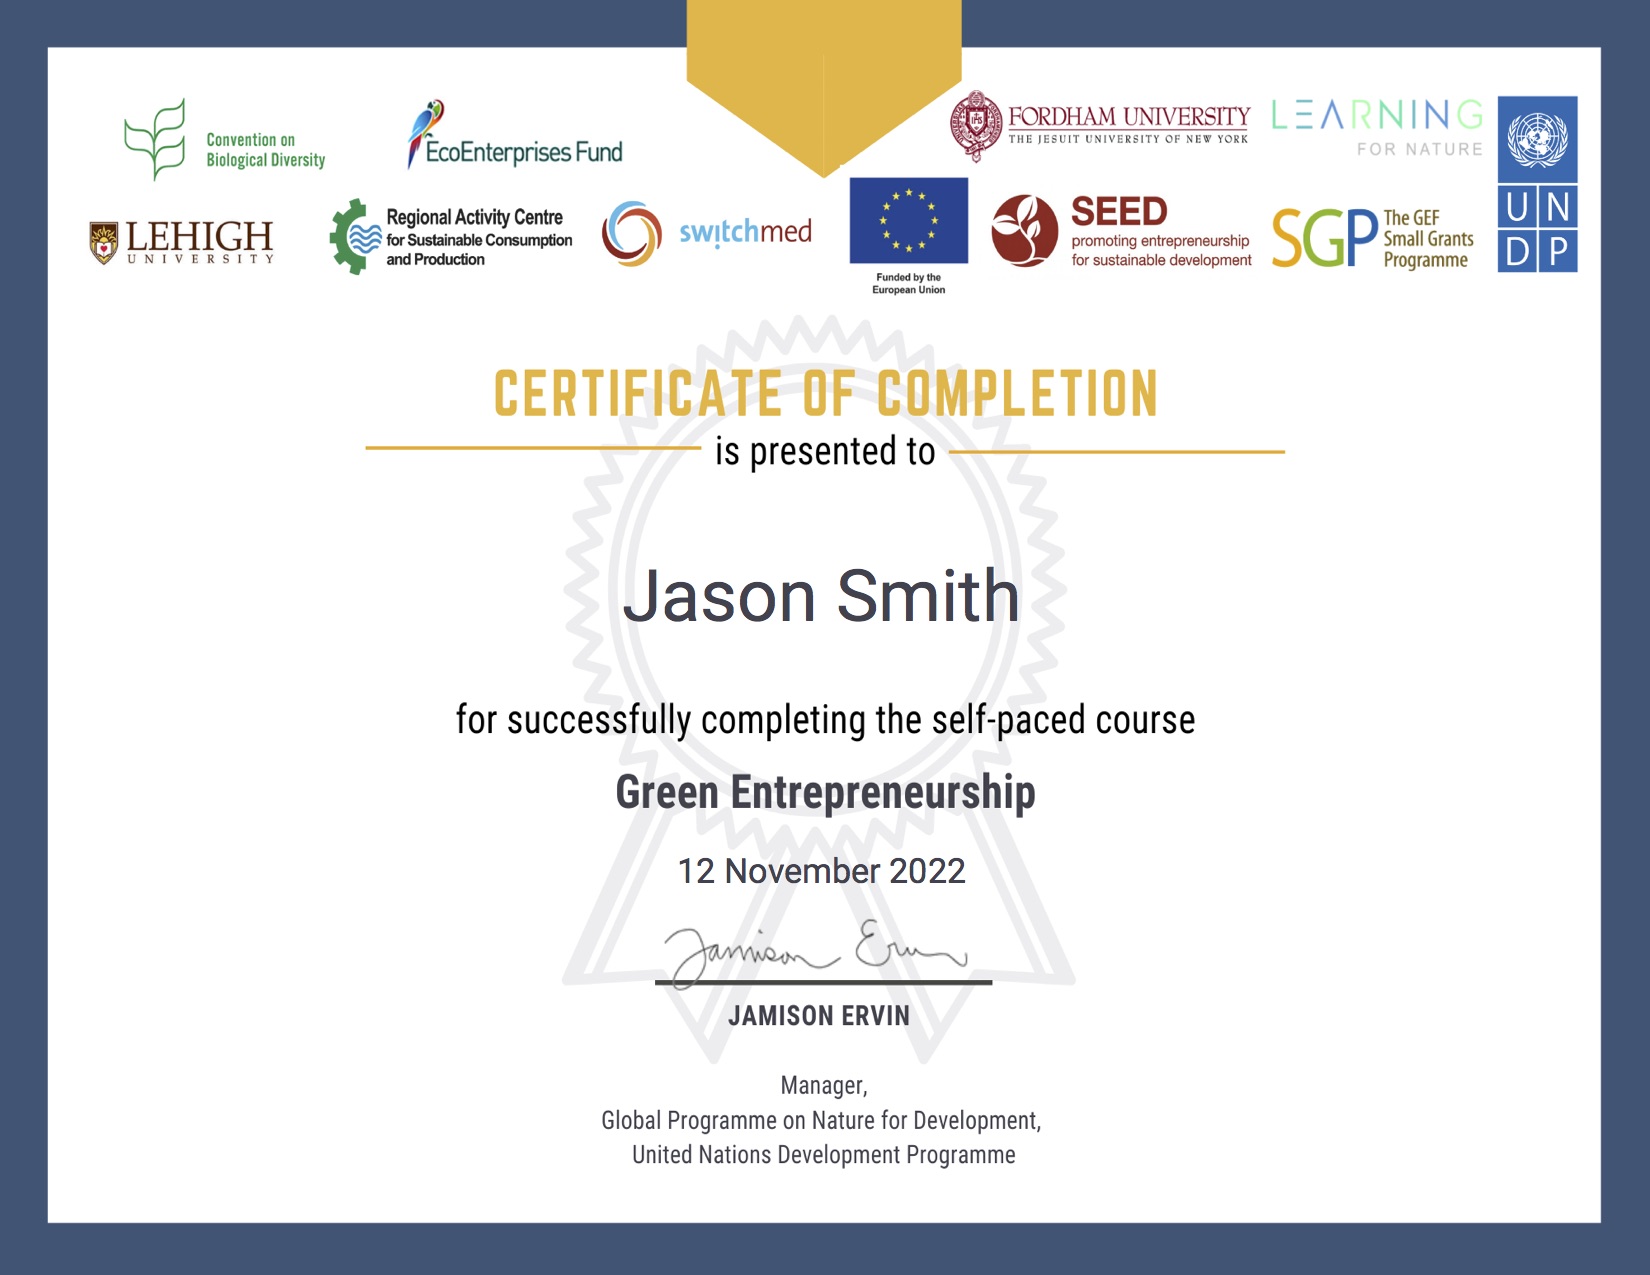 Jason-Smith-Green-Entrepreneurship-2022-Green-Entrepreneurship-2022-Learning-for-Nature